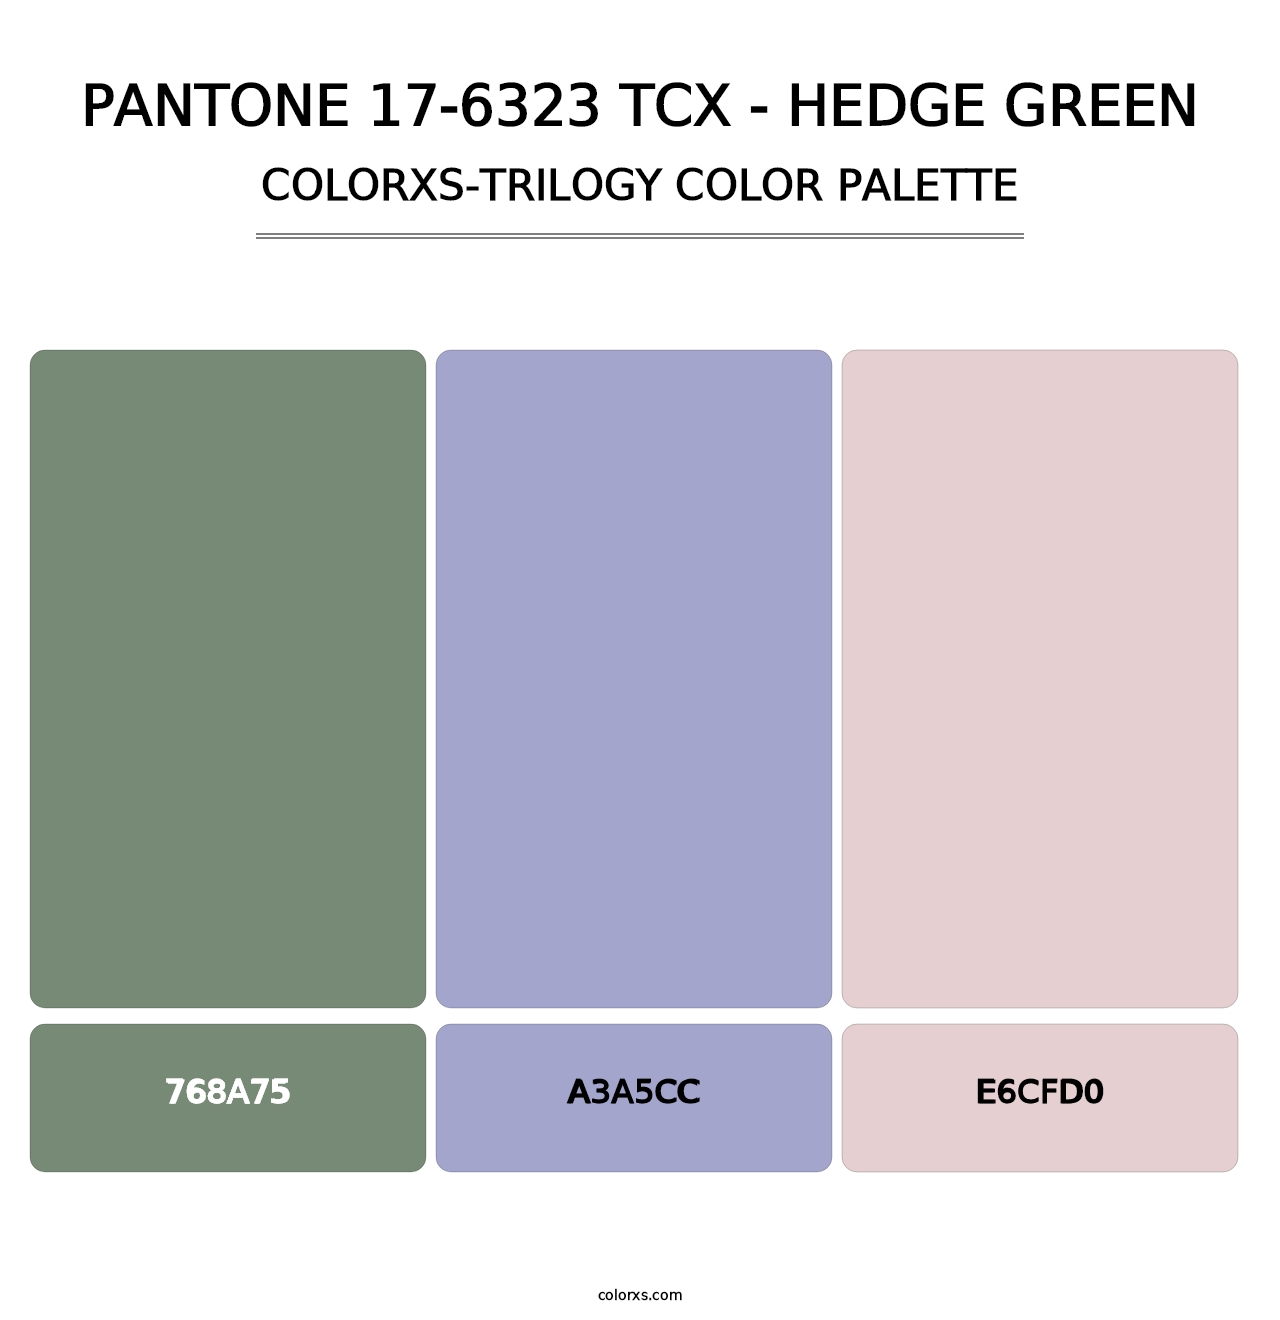 PANTONE 17-6323 TCX - Hedge Green - Colorxs Trilogy Palette